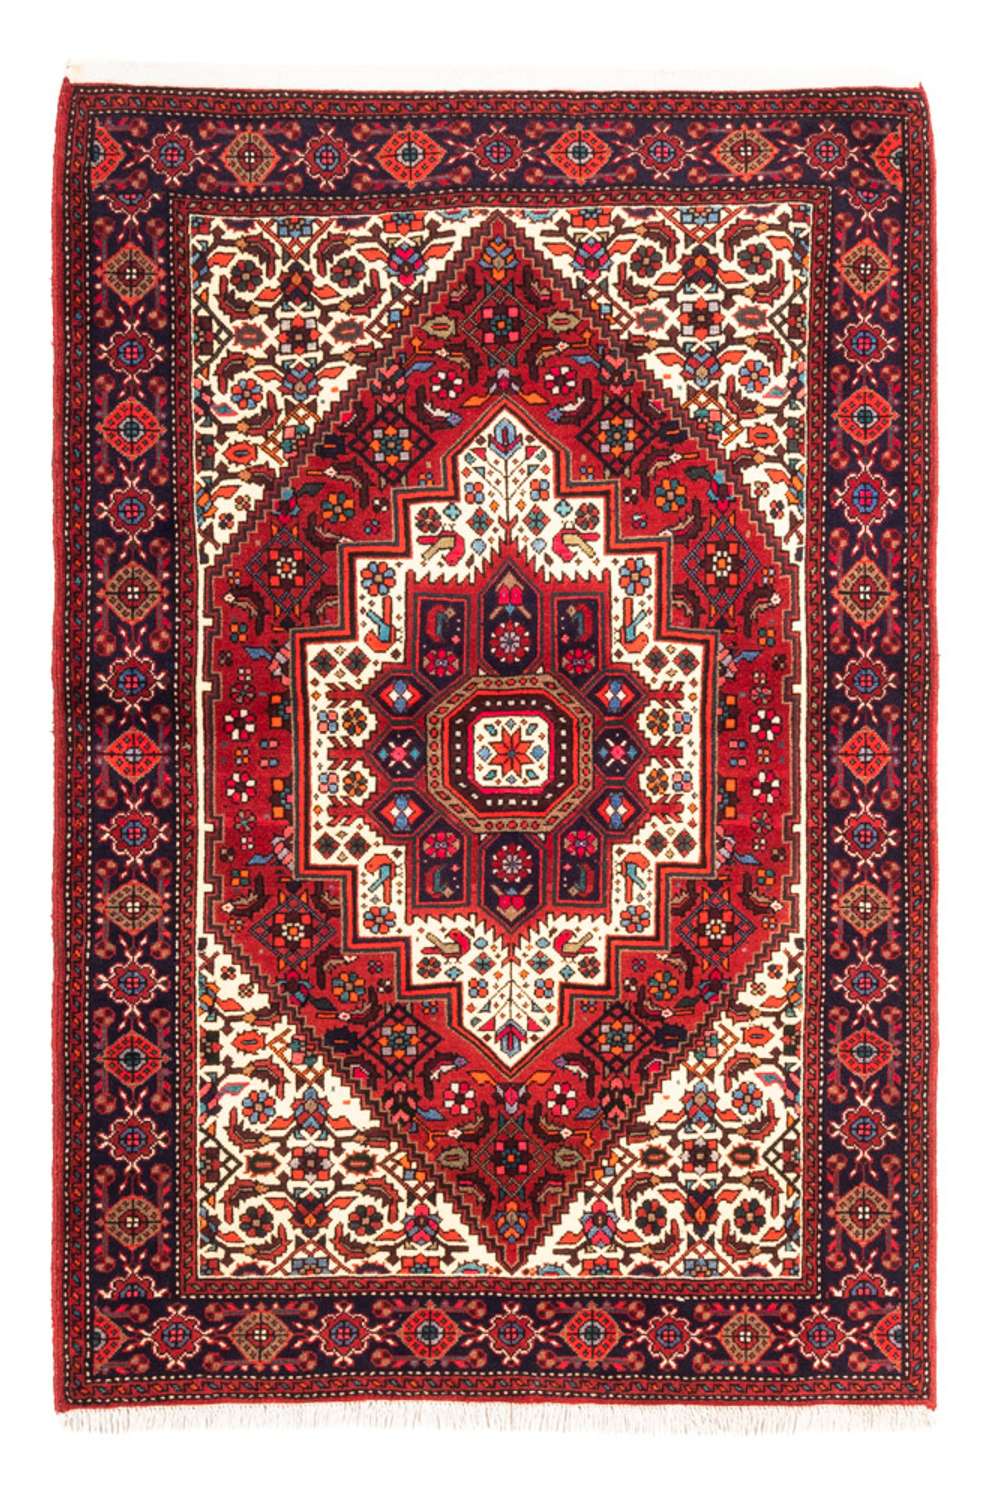 Tapis persan - Nomadic - 148 x 100 cm - rouge